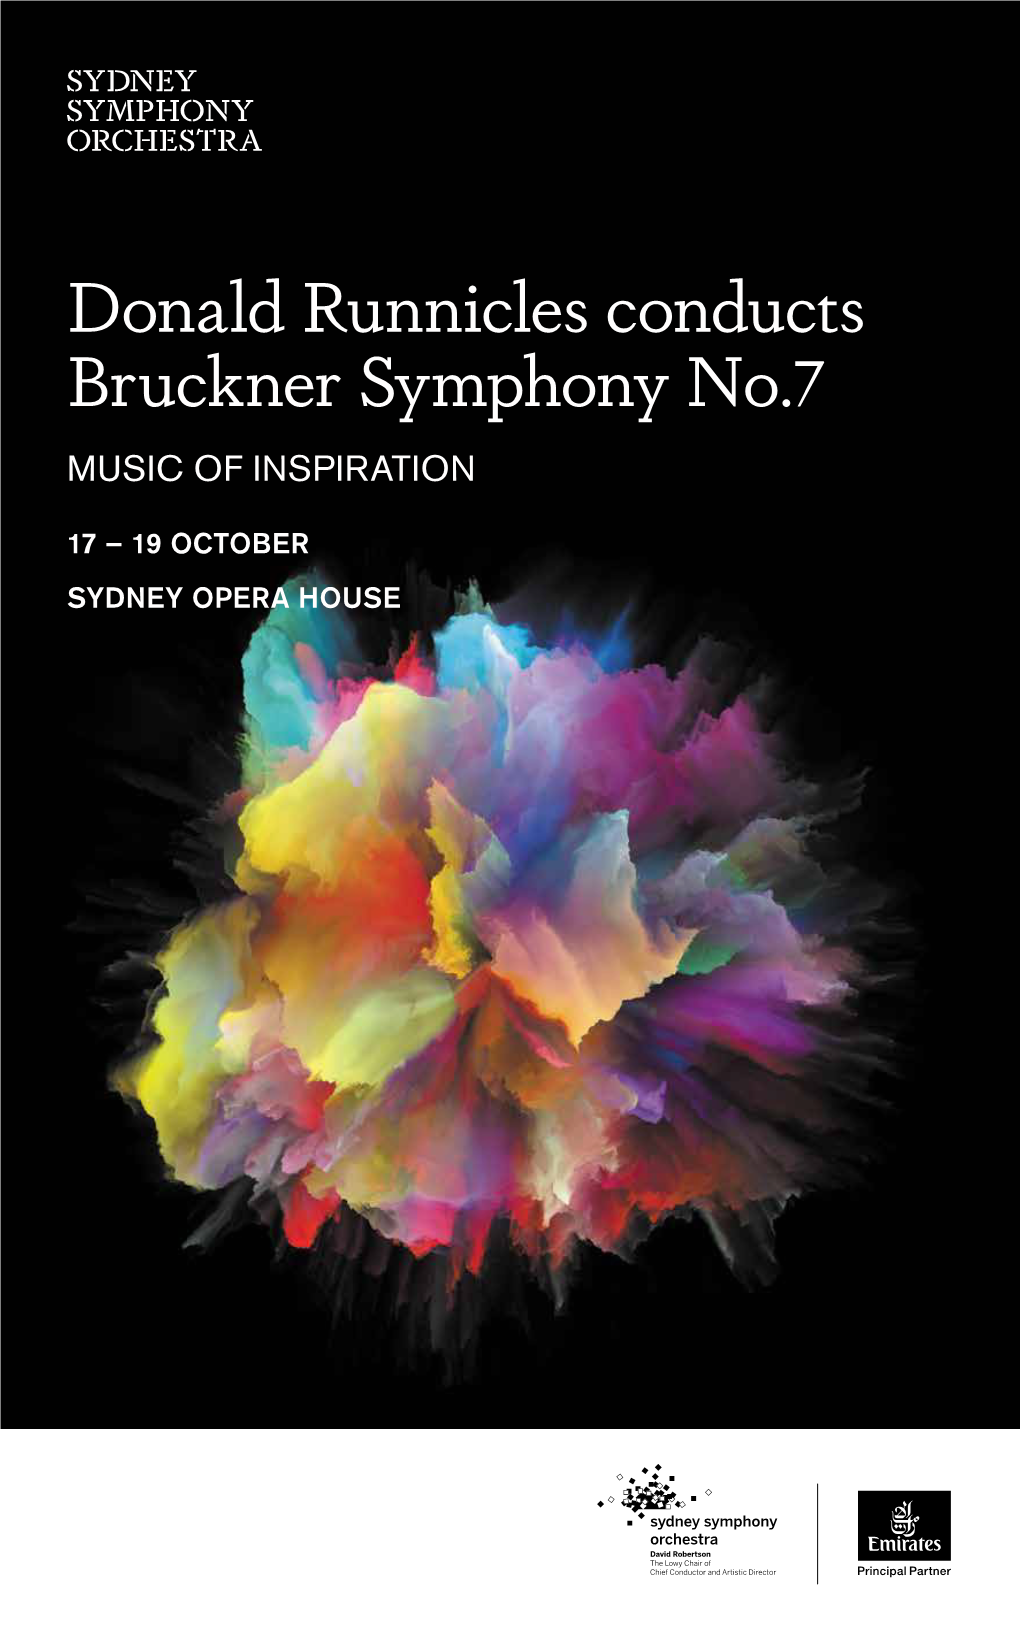 Donald Runnicles Conducts Bruckner Symphony No.7